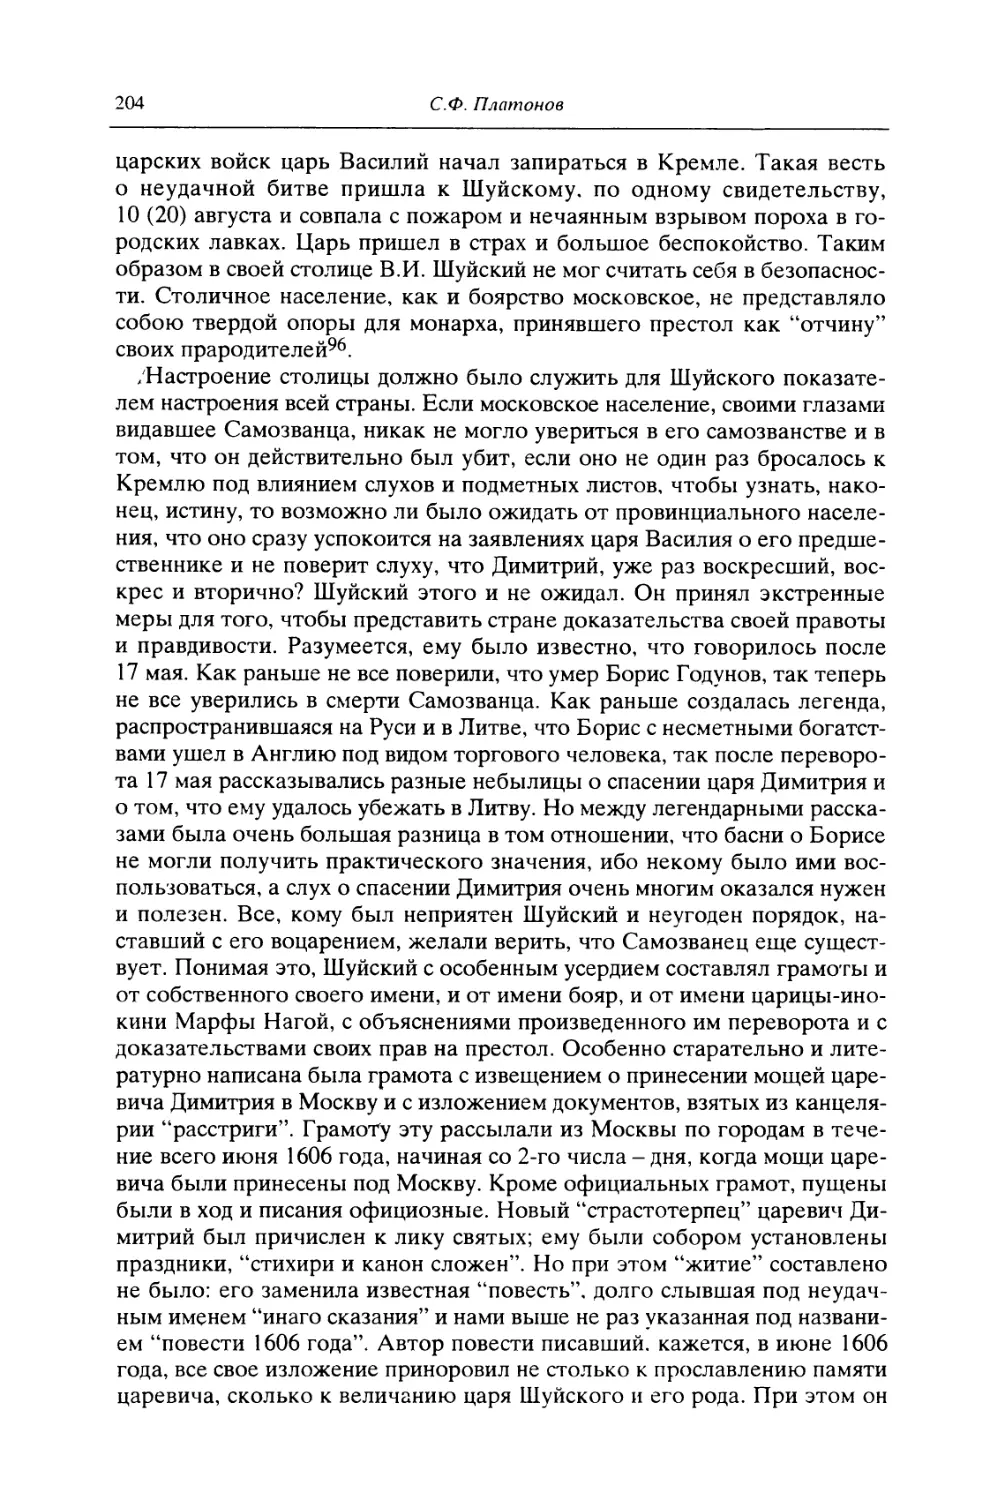 II. Отношение к перевороту 17 мая московских областей. Восстание северских и польских городов